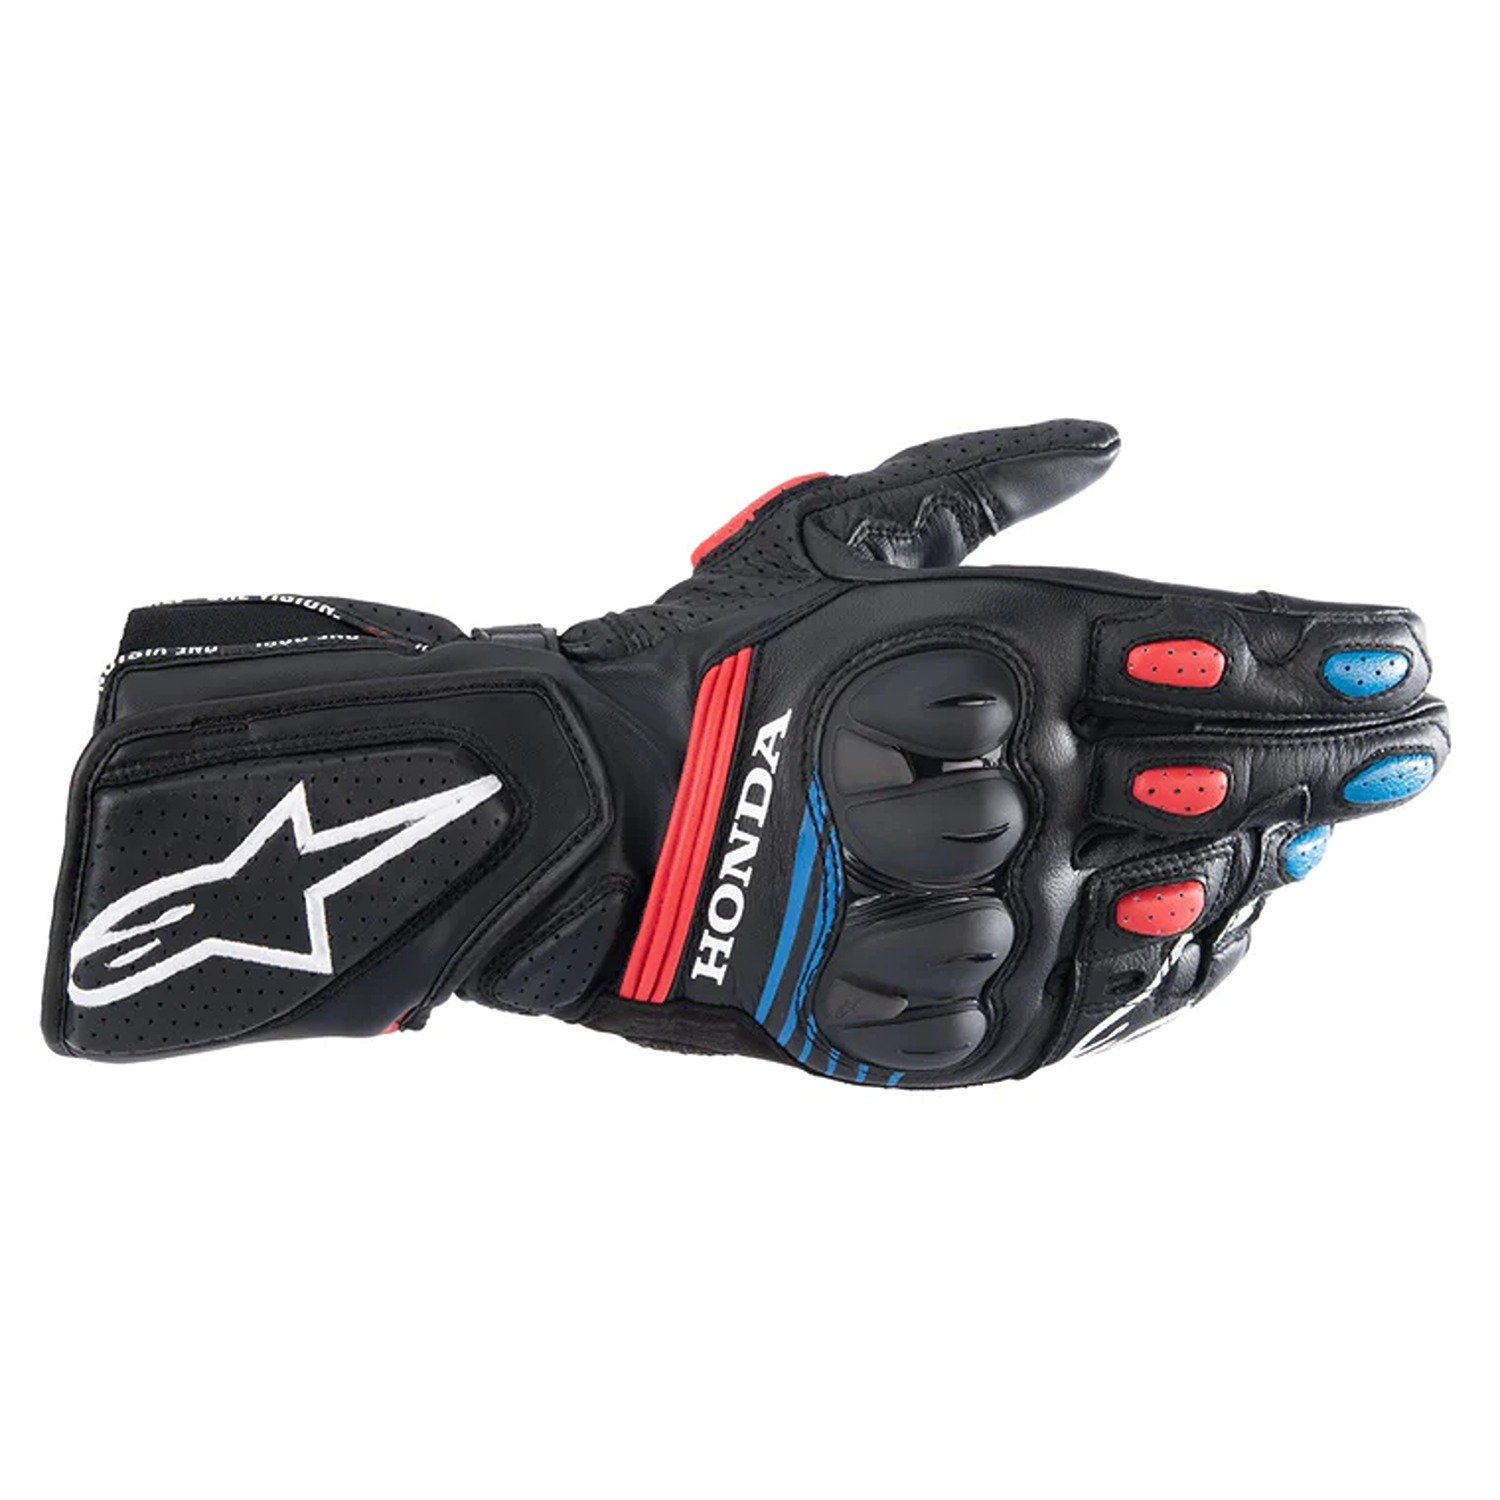 Image of Alpinestars Honda SP-8 V3 Gloves Black Bright Red Blue Size 3XL ID 8059347168142